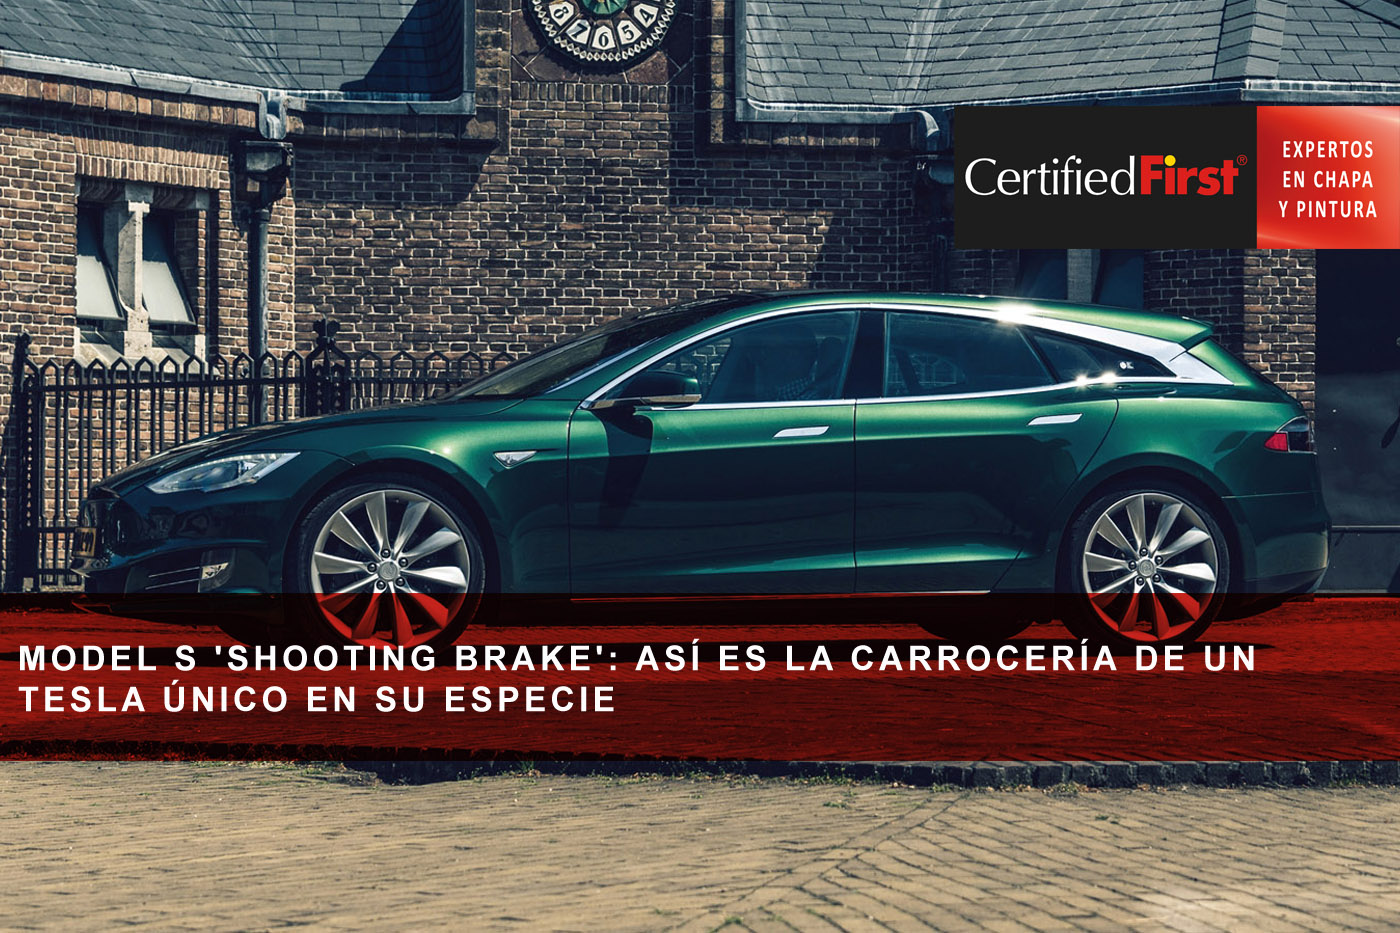 Model S 'Shooting Brake': así es la carrocería de un Tesla único en su especie